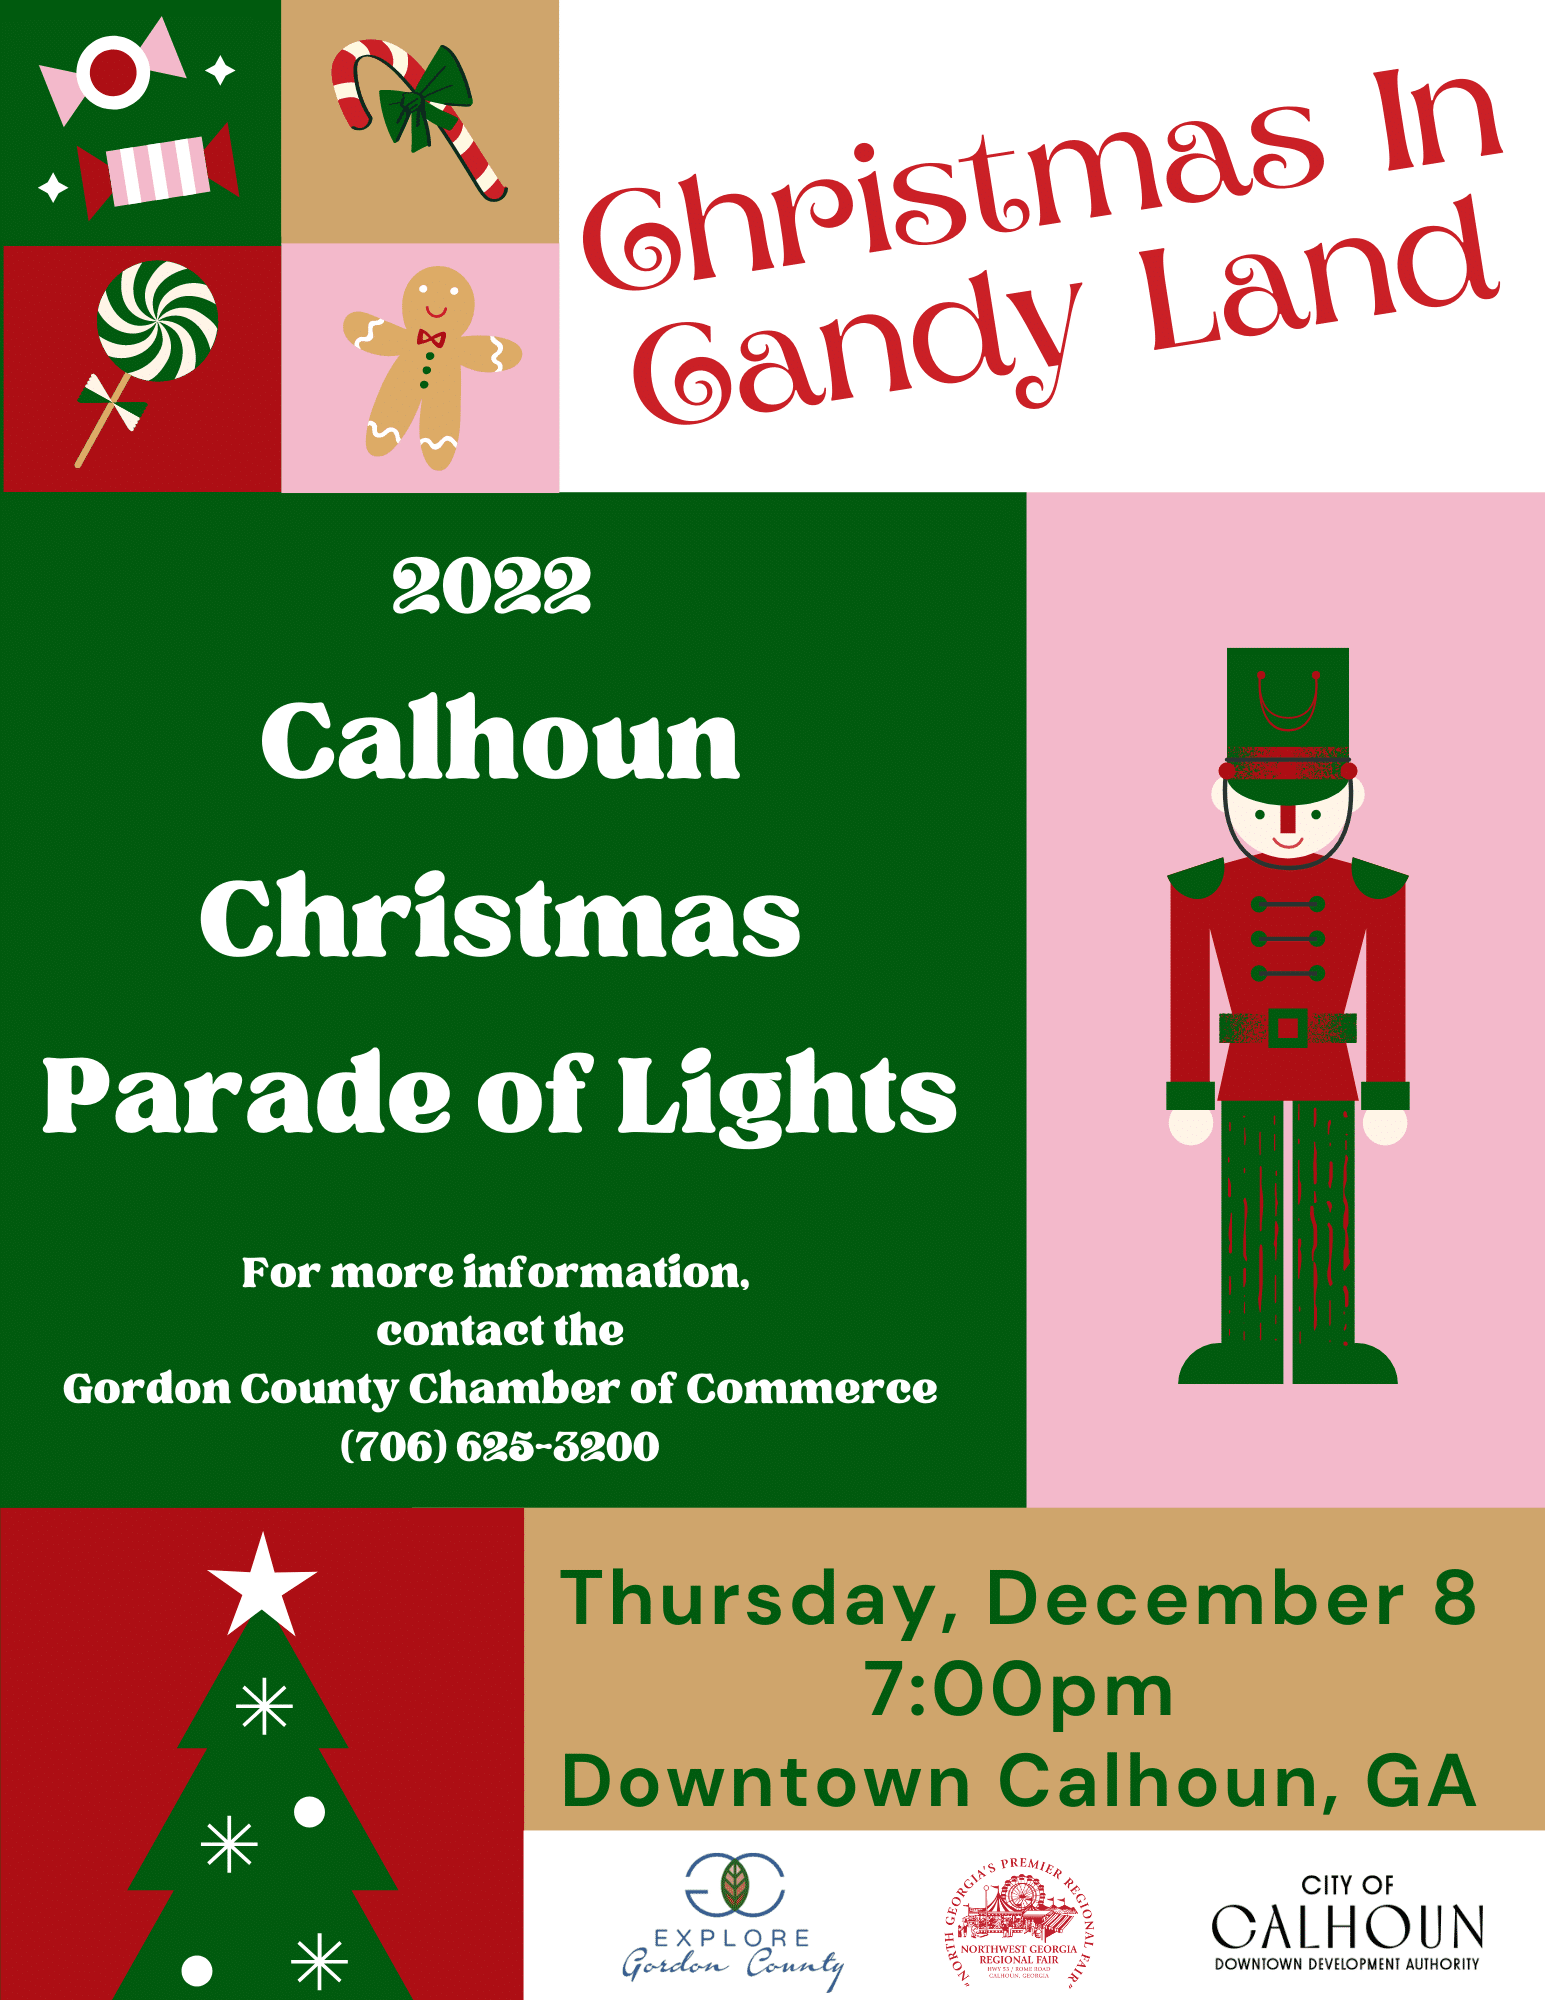 Calhoun's Christmas Parade of Lights